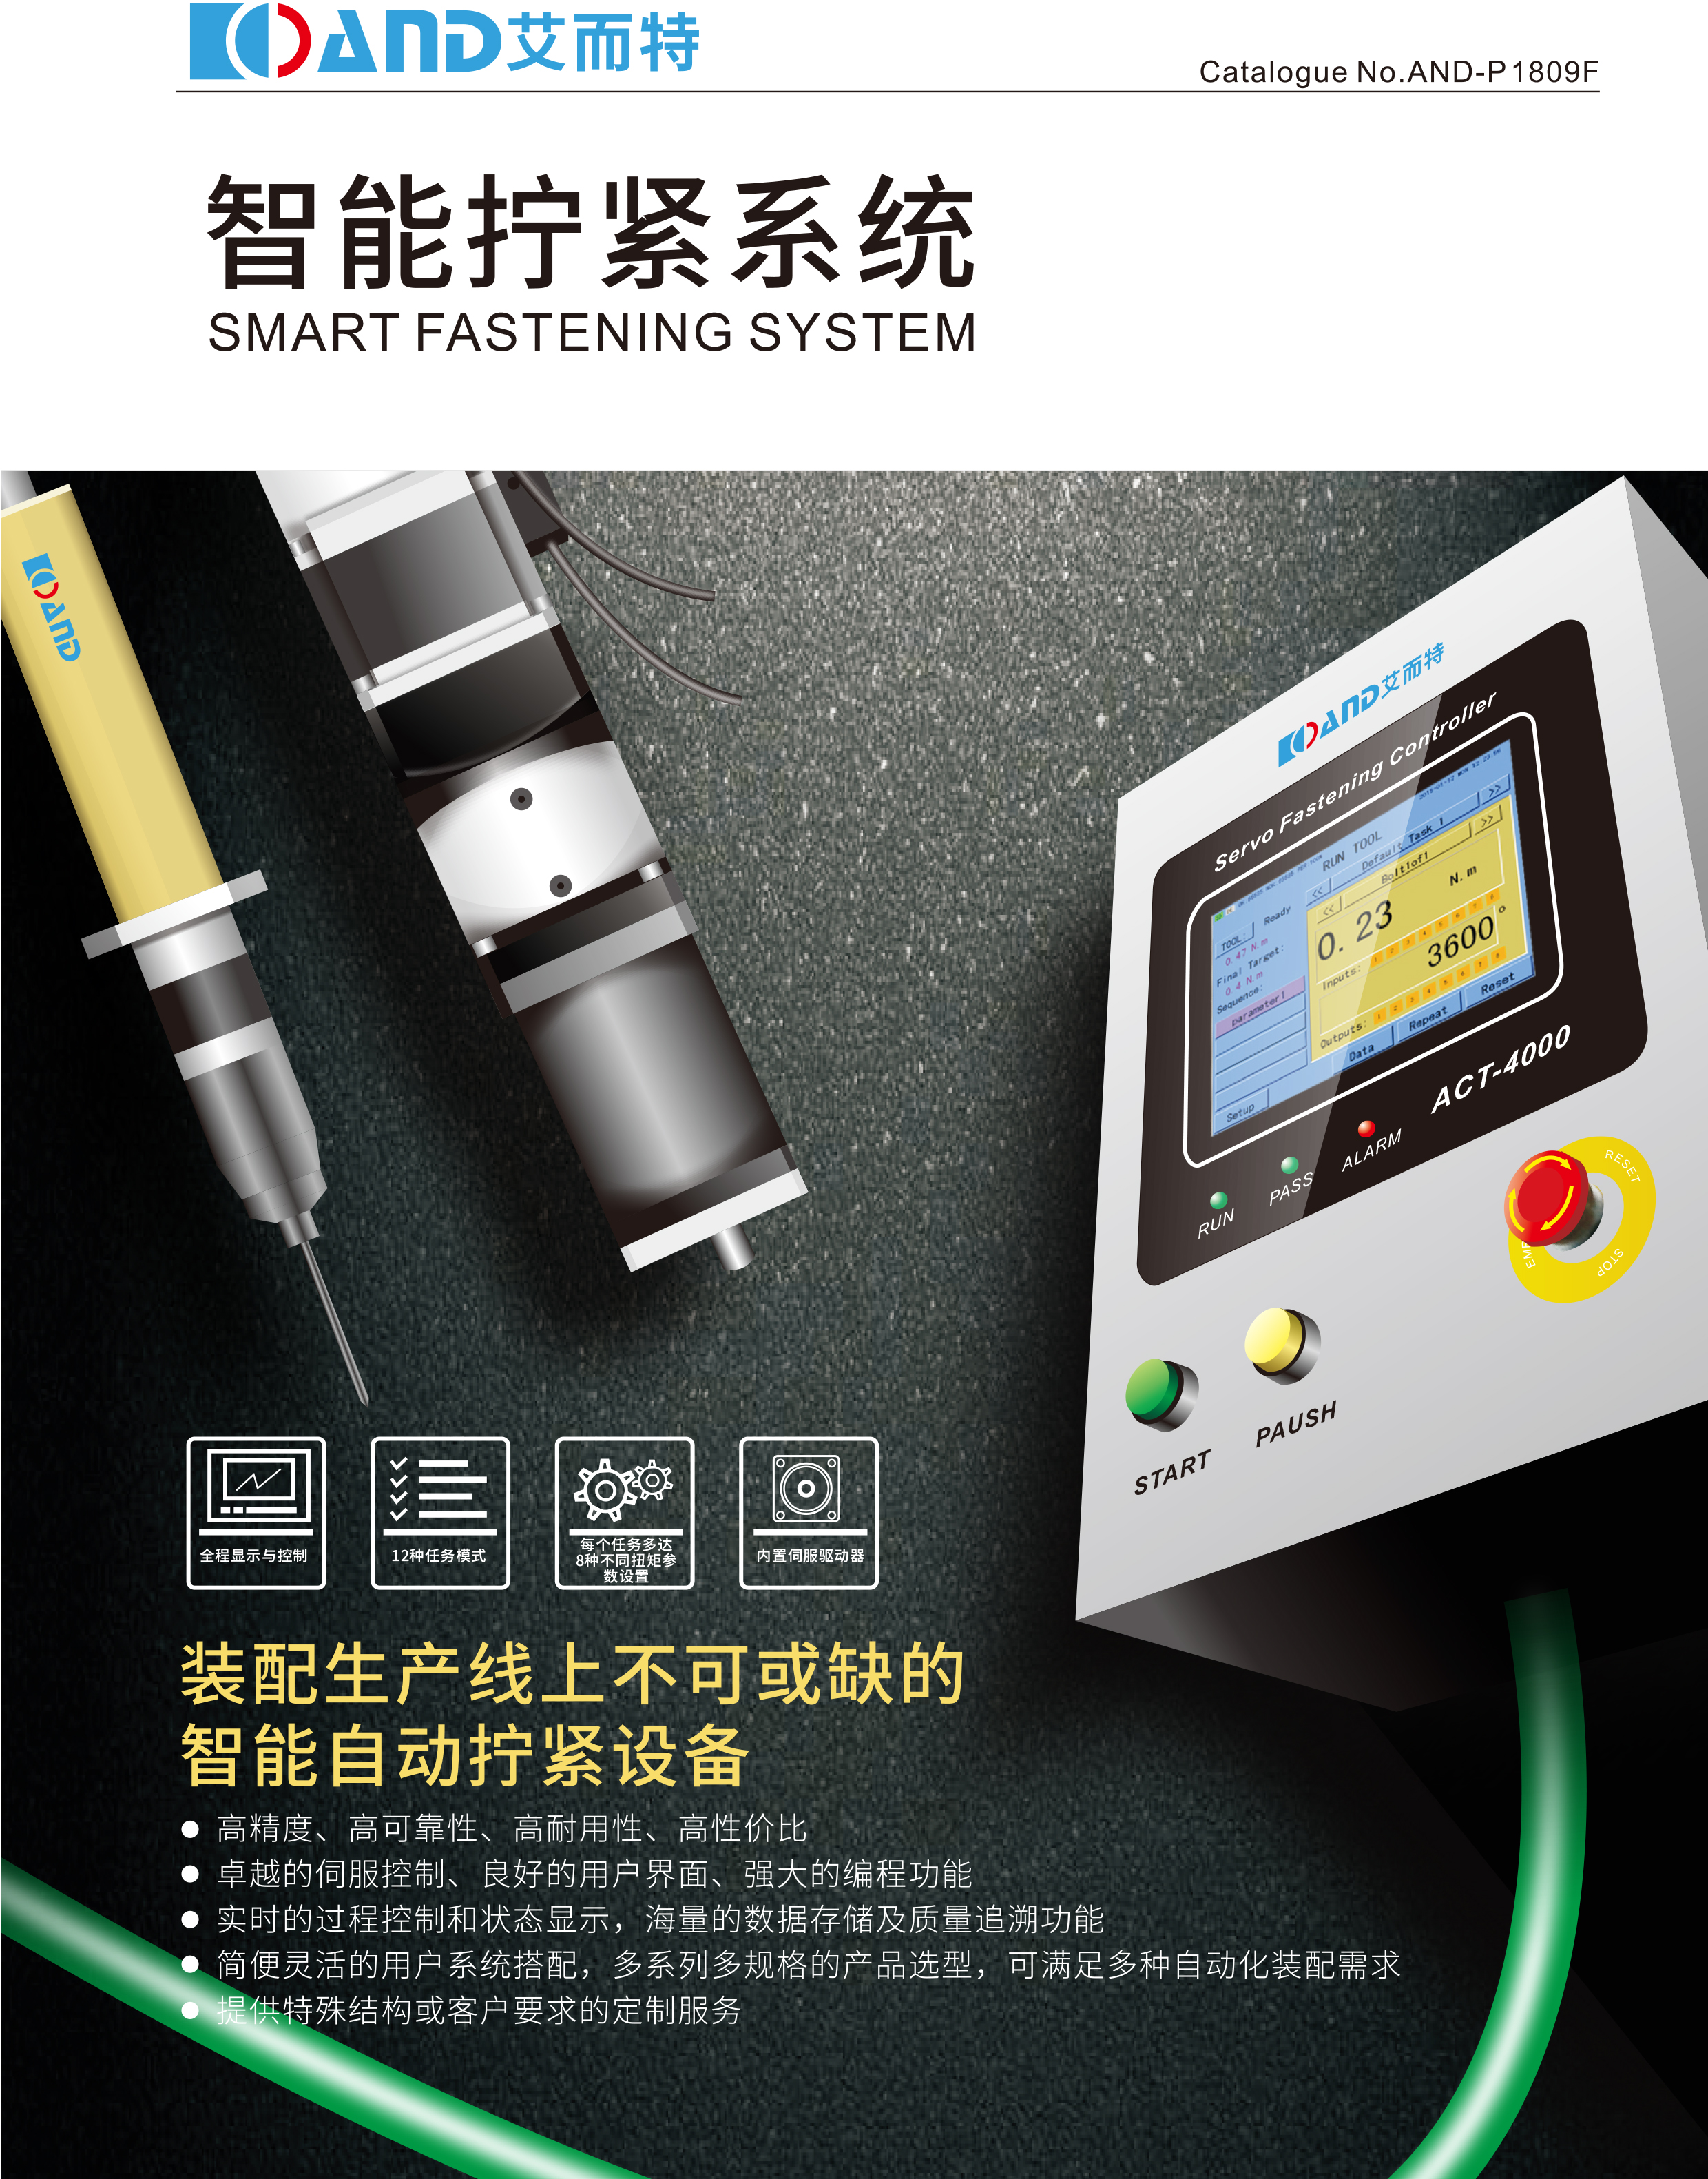 进口旋转变压器价格 气压表报价 深圳市艾而特工业自动化设备有限公司